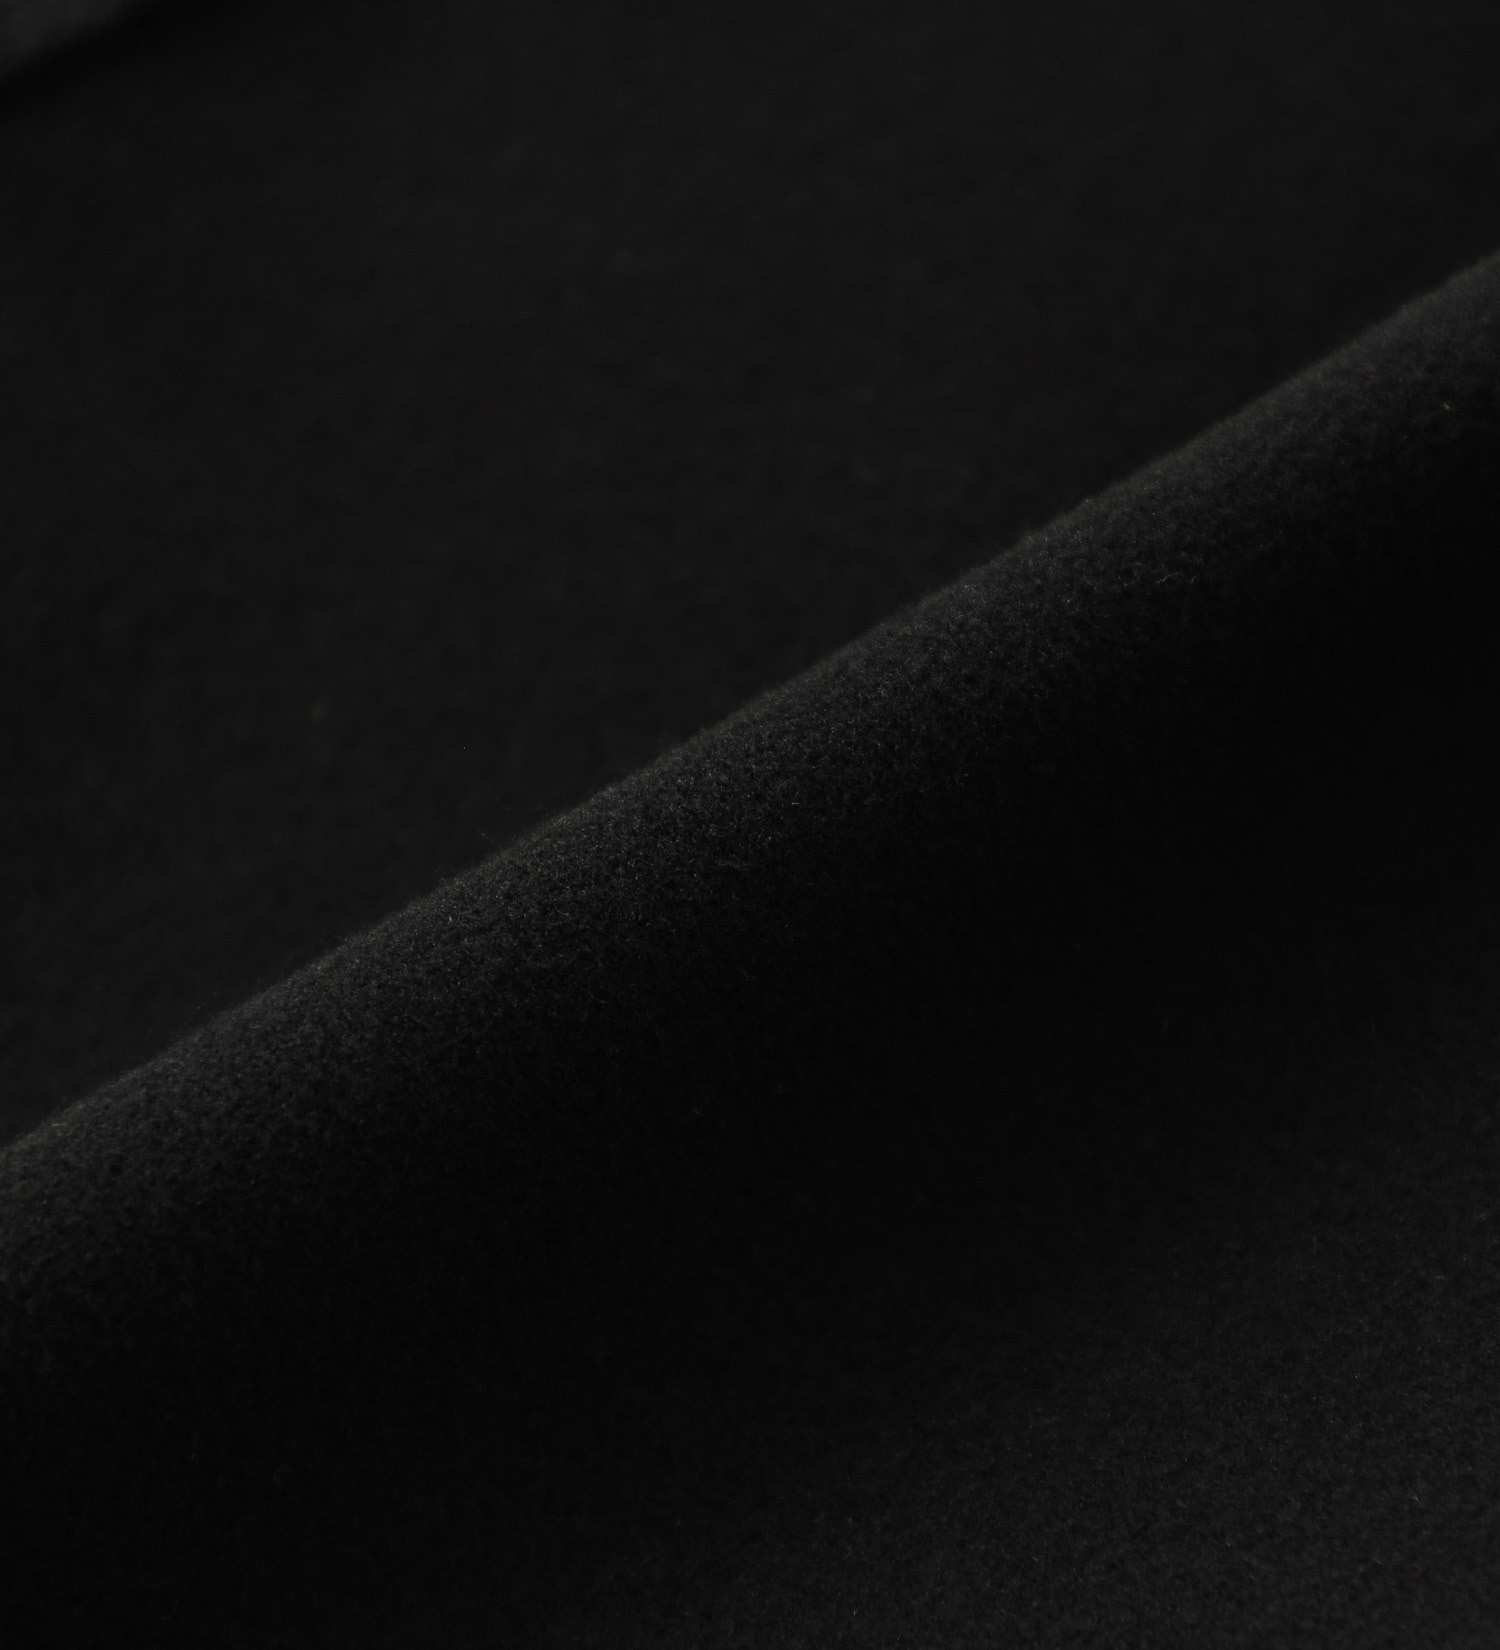 EDWIN(エドウイン)の【BLACKFRIDAY】2層で暖かい EDWIN インターナショナルベーシック レギュラーストレートパンツ403 WILD FIRE 2層ボンディング構造 【暖】|パンツ/パンツ/メンズ|ブラック